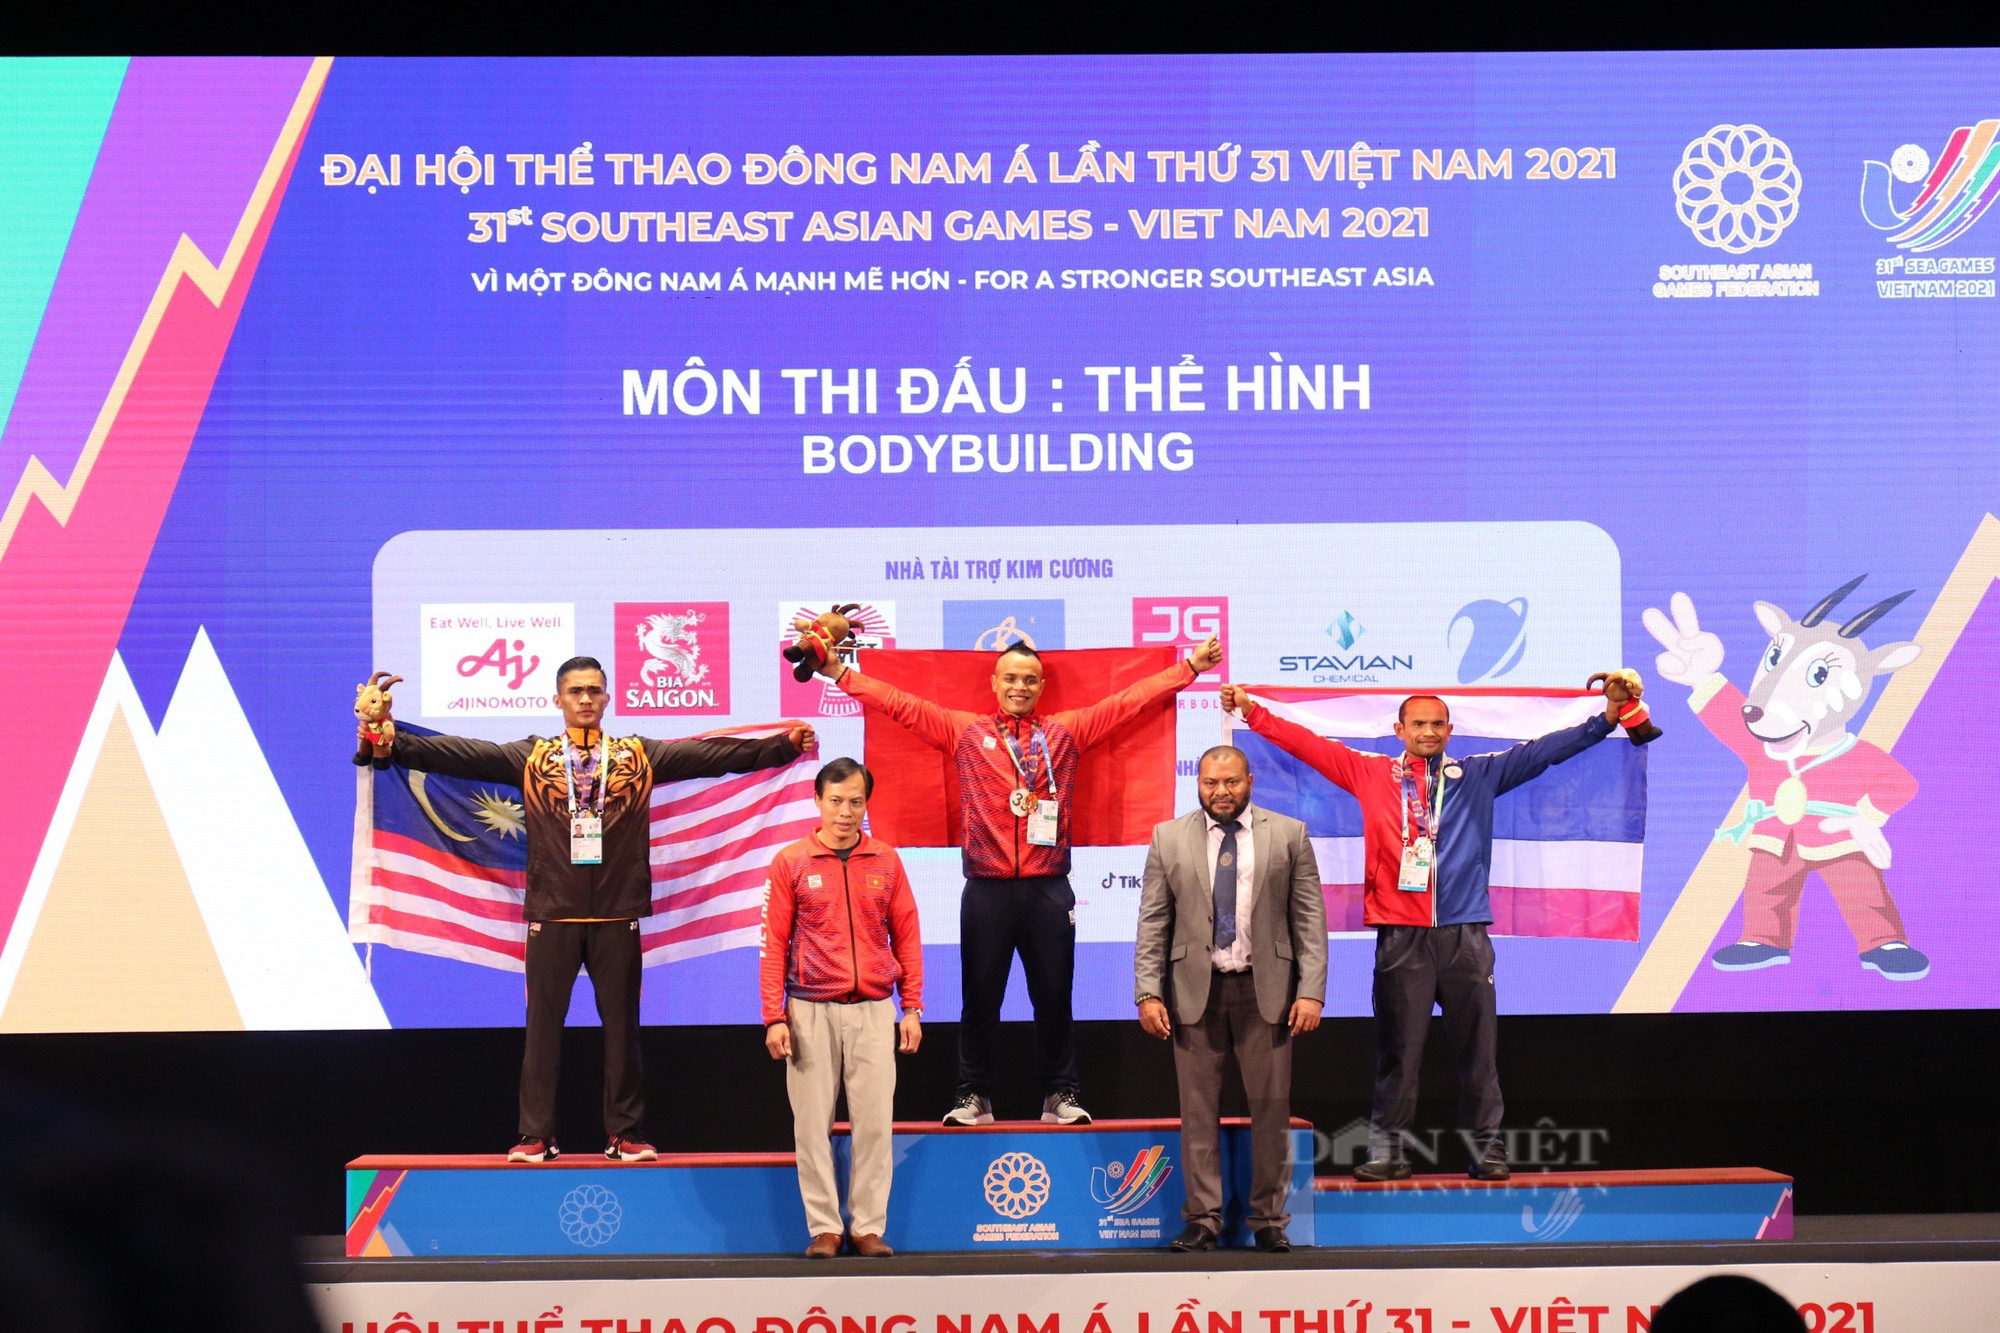 Mãn nhãn cơ bắp cuồn cuộn của VĐV Trần Hoàng Duy Thuận đoạt huy chương vàng thể hình SEA Games 31 - Ảnh 9.